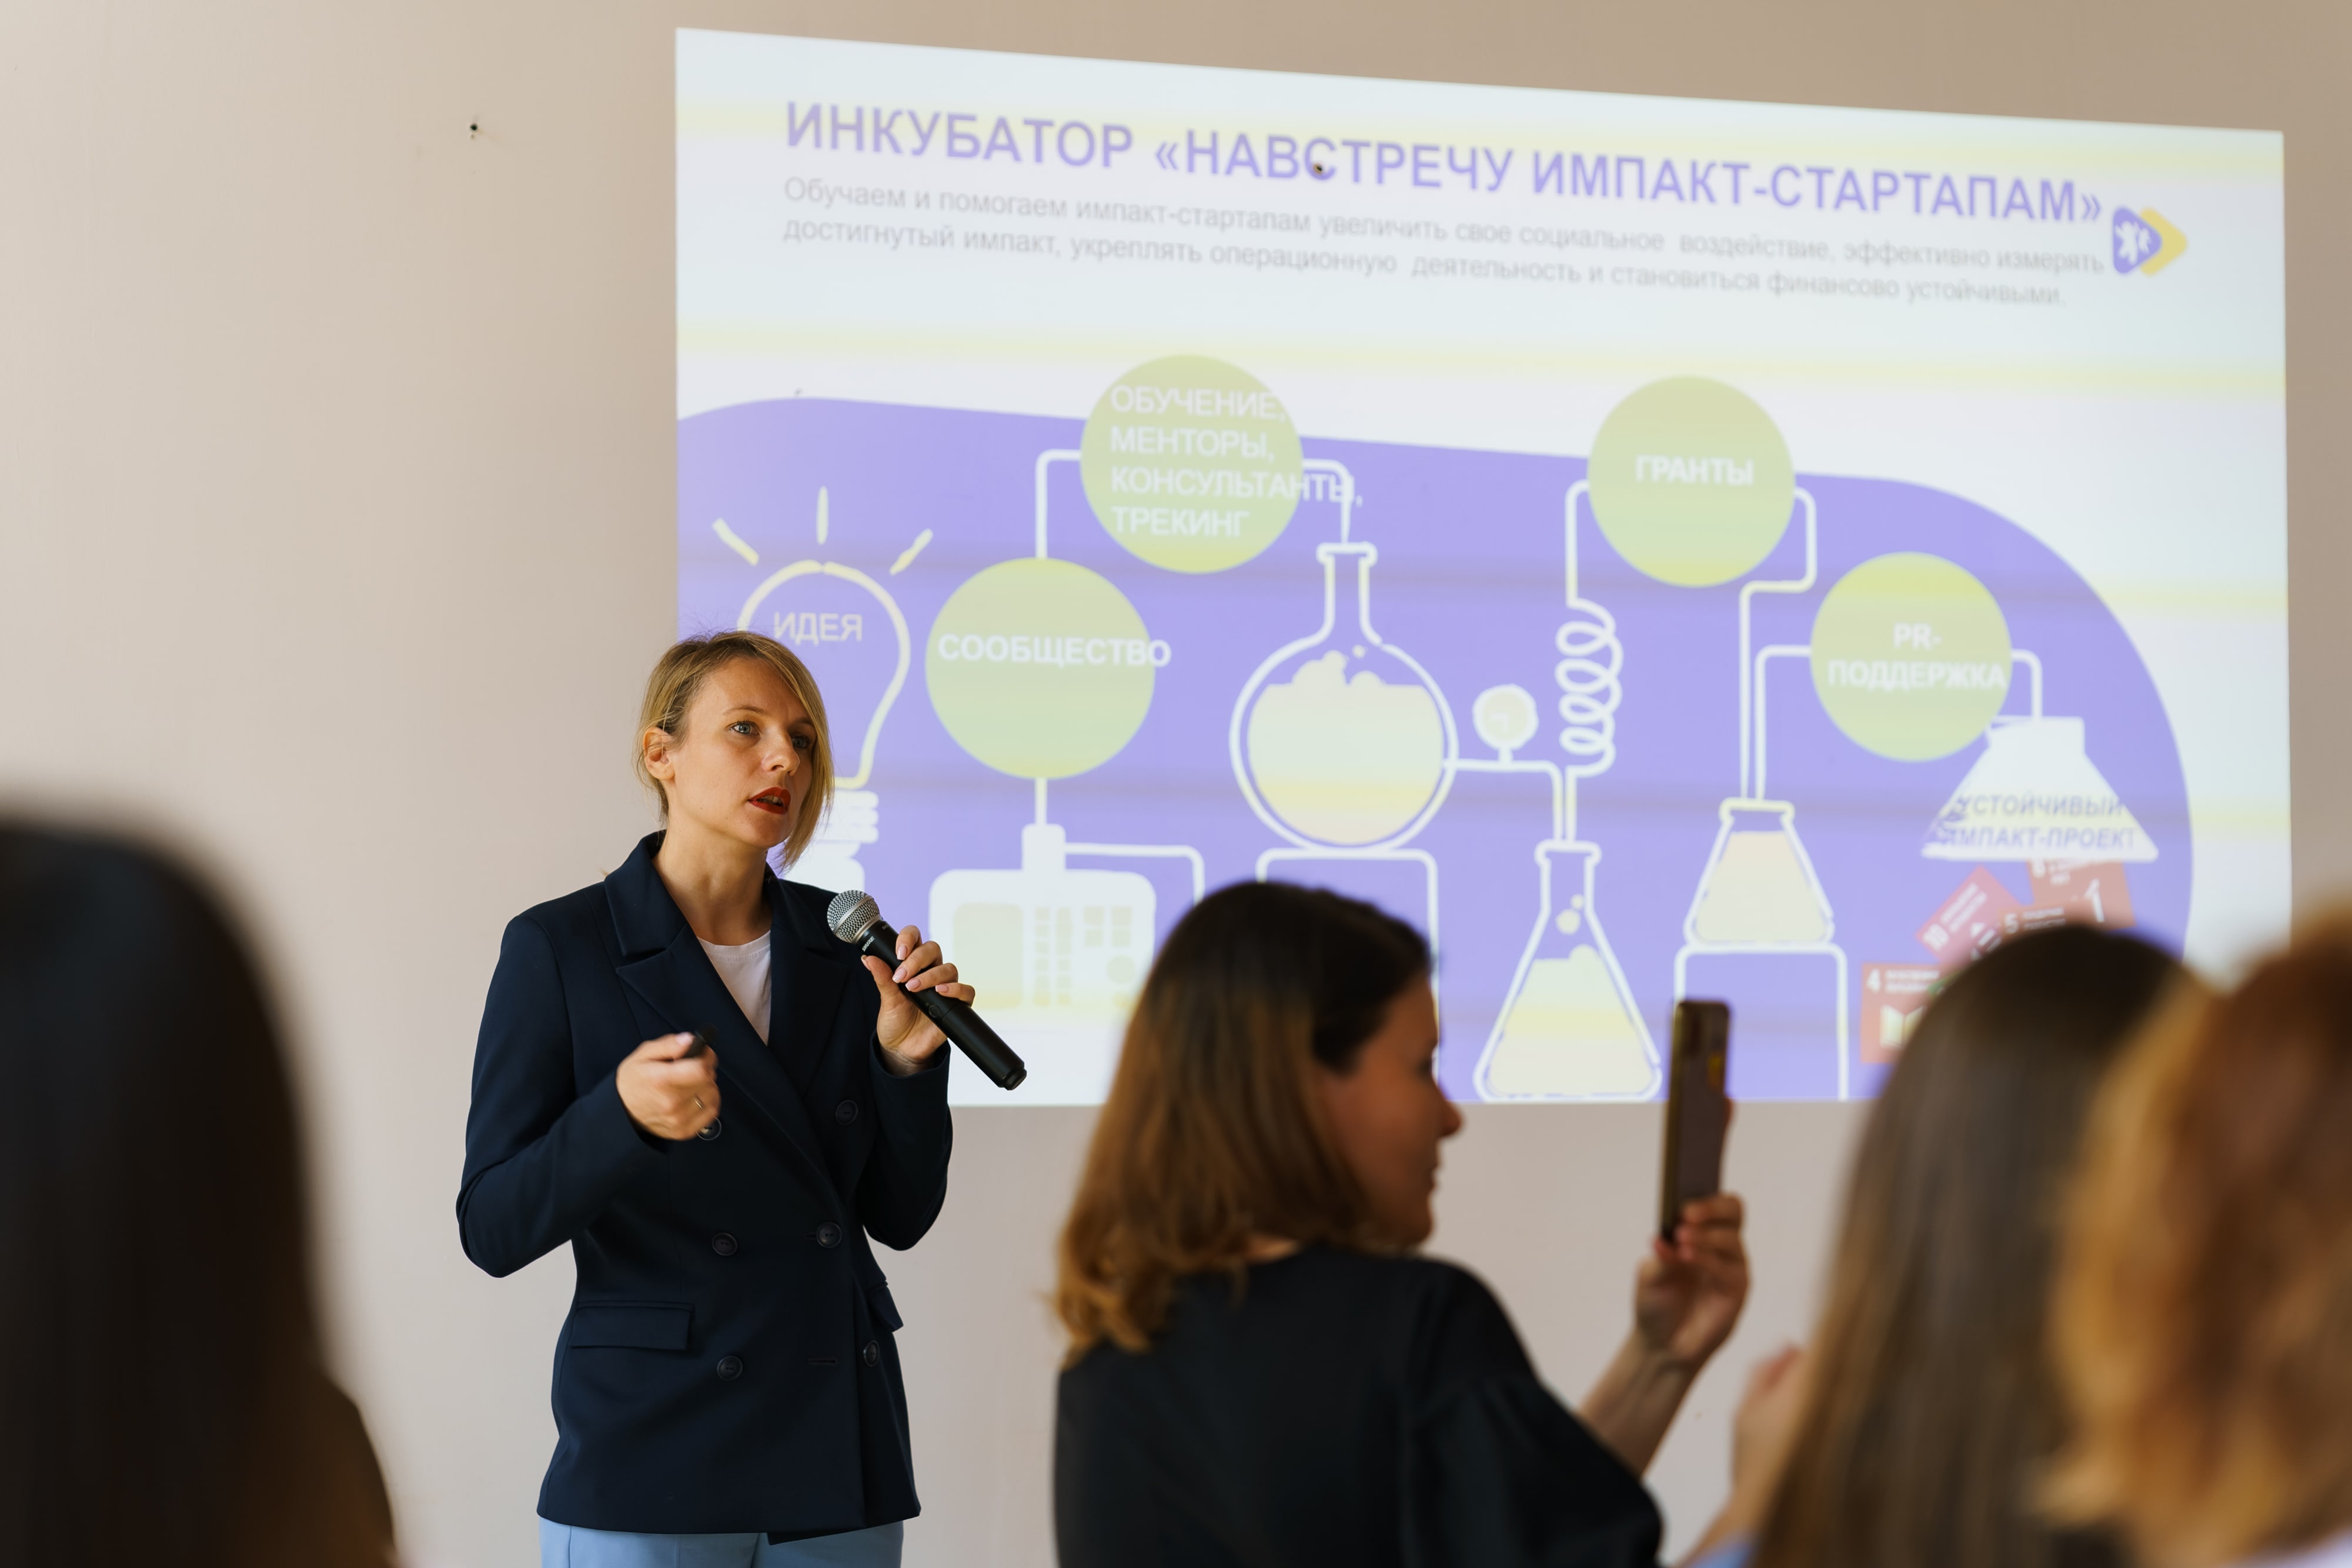 Стартовал конкурс соцпроектов «Навстречу импакт-стартапам»: гранты выросли до 1,5 млн руб